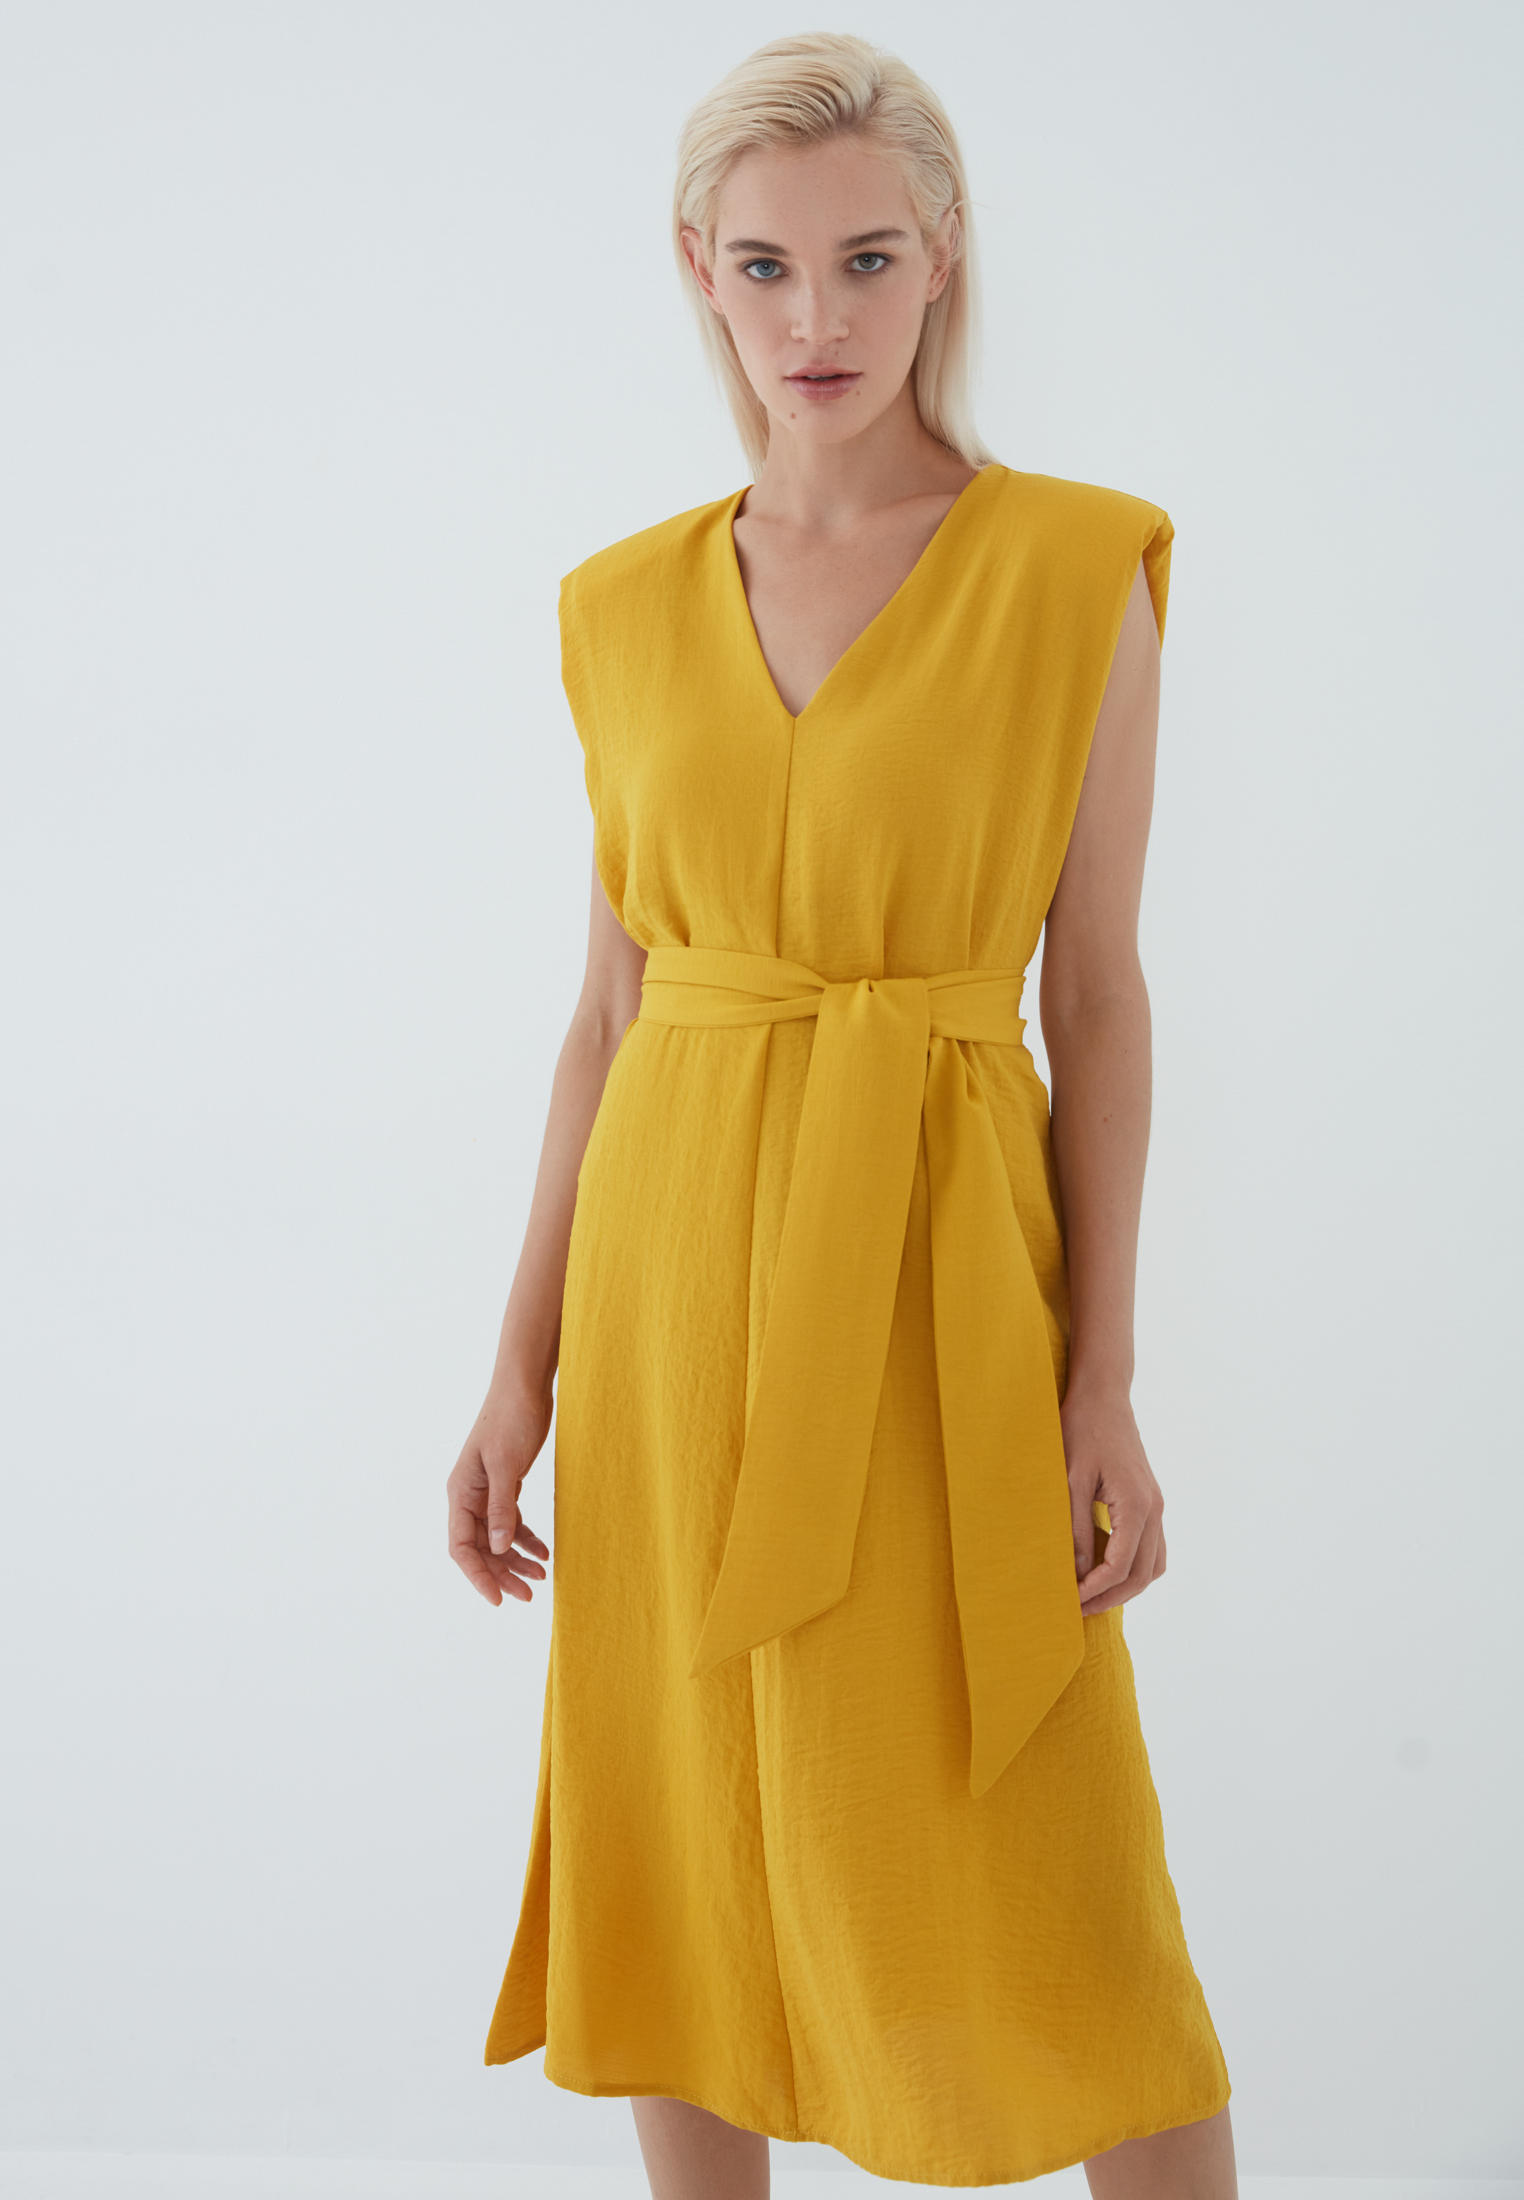 Платье Zarina Exclusive online, цвет: желтый, MP002XW07D0T — купить в интернет-магазине Lamoda